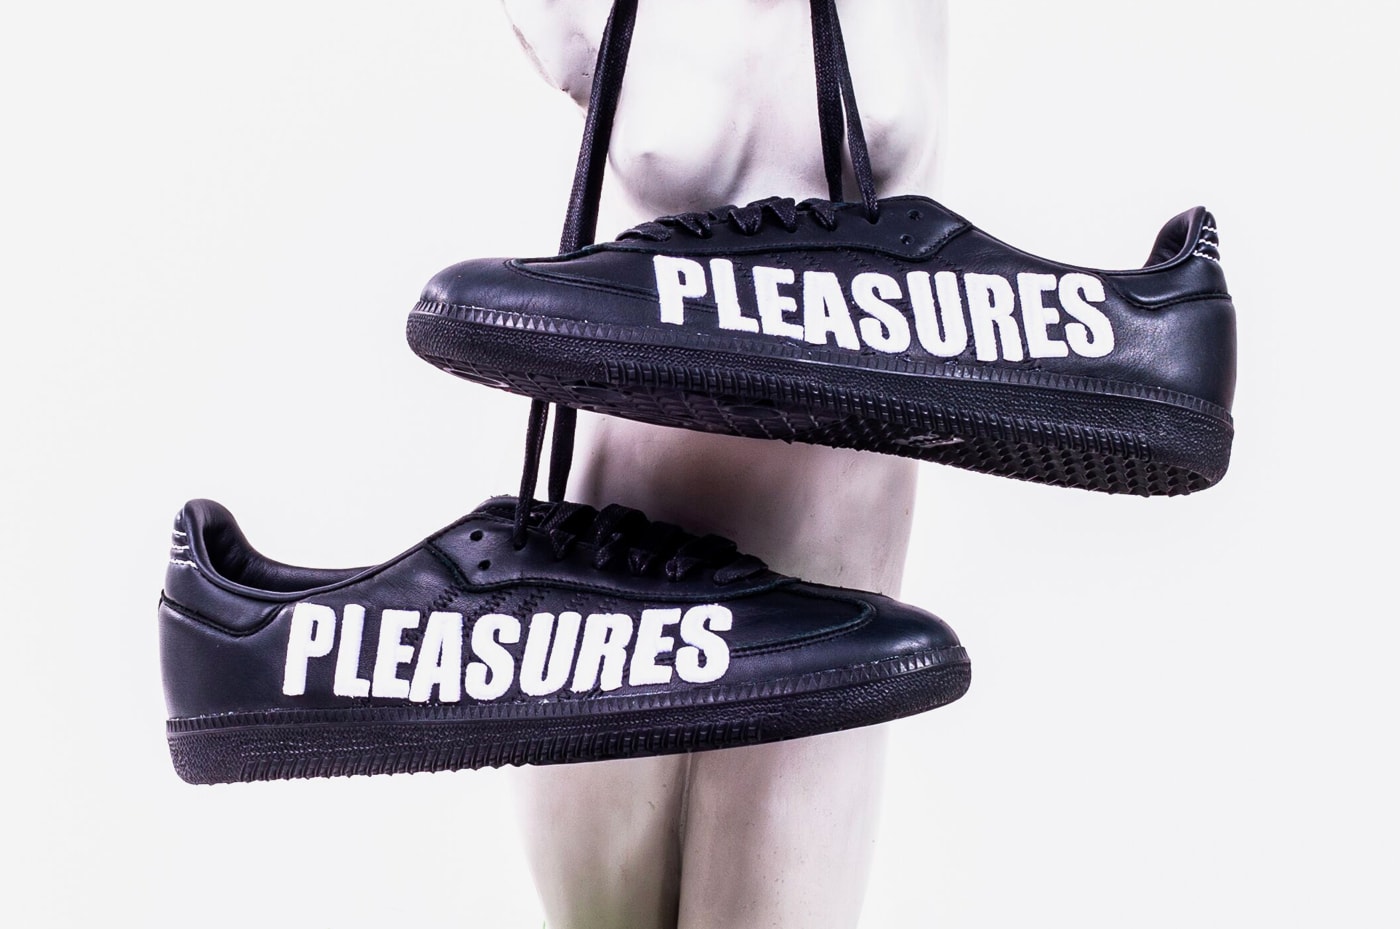 PLEASURES adidas Consortium Release Black White Alex James